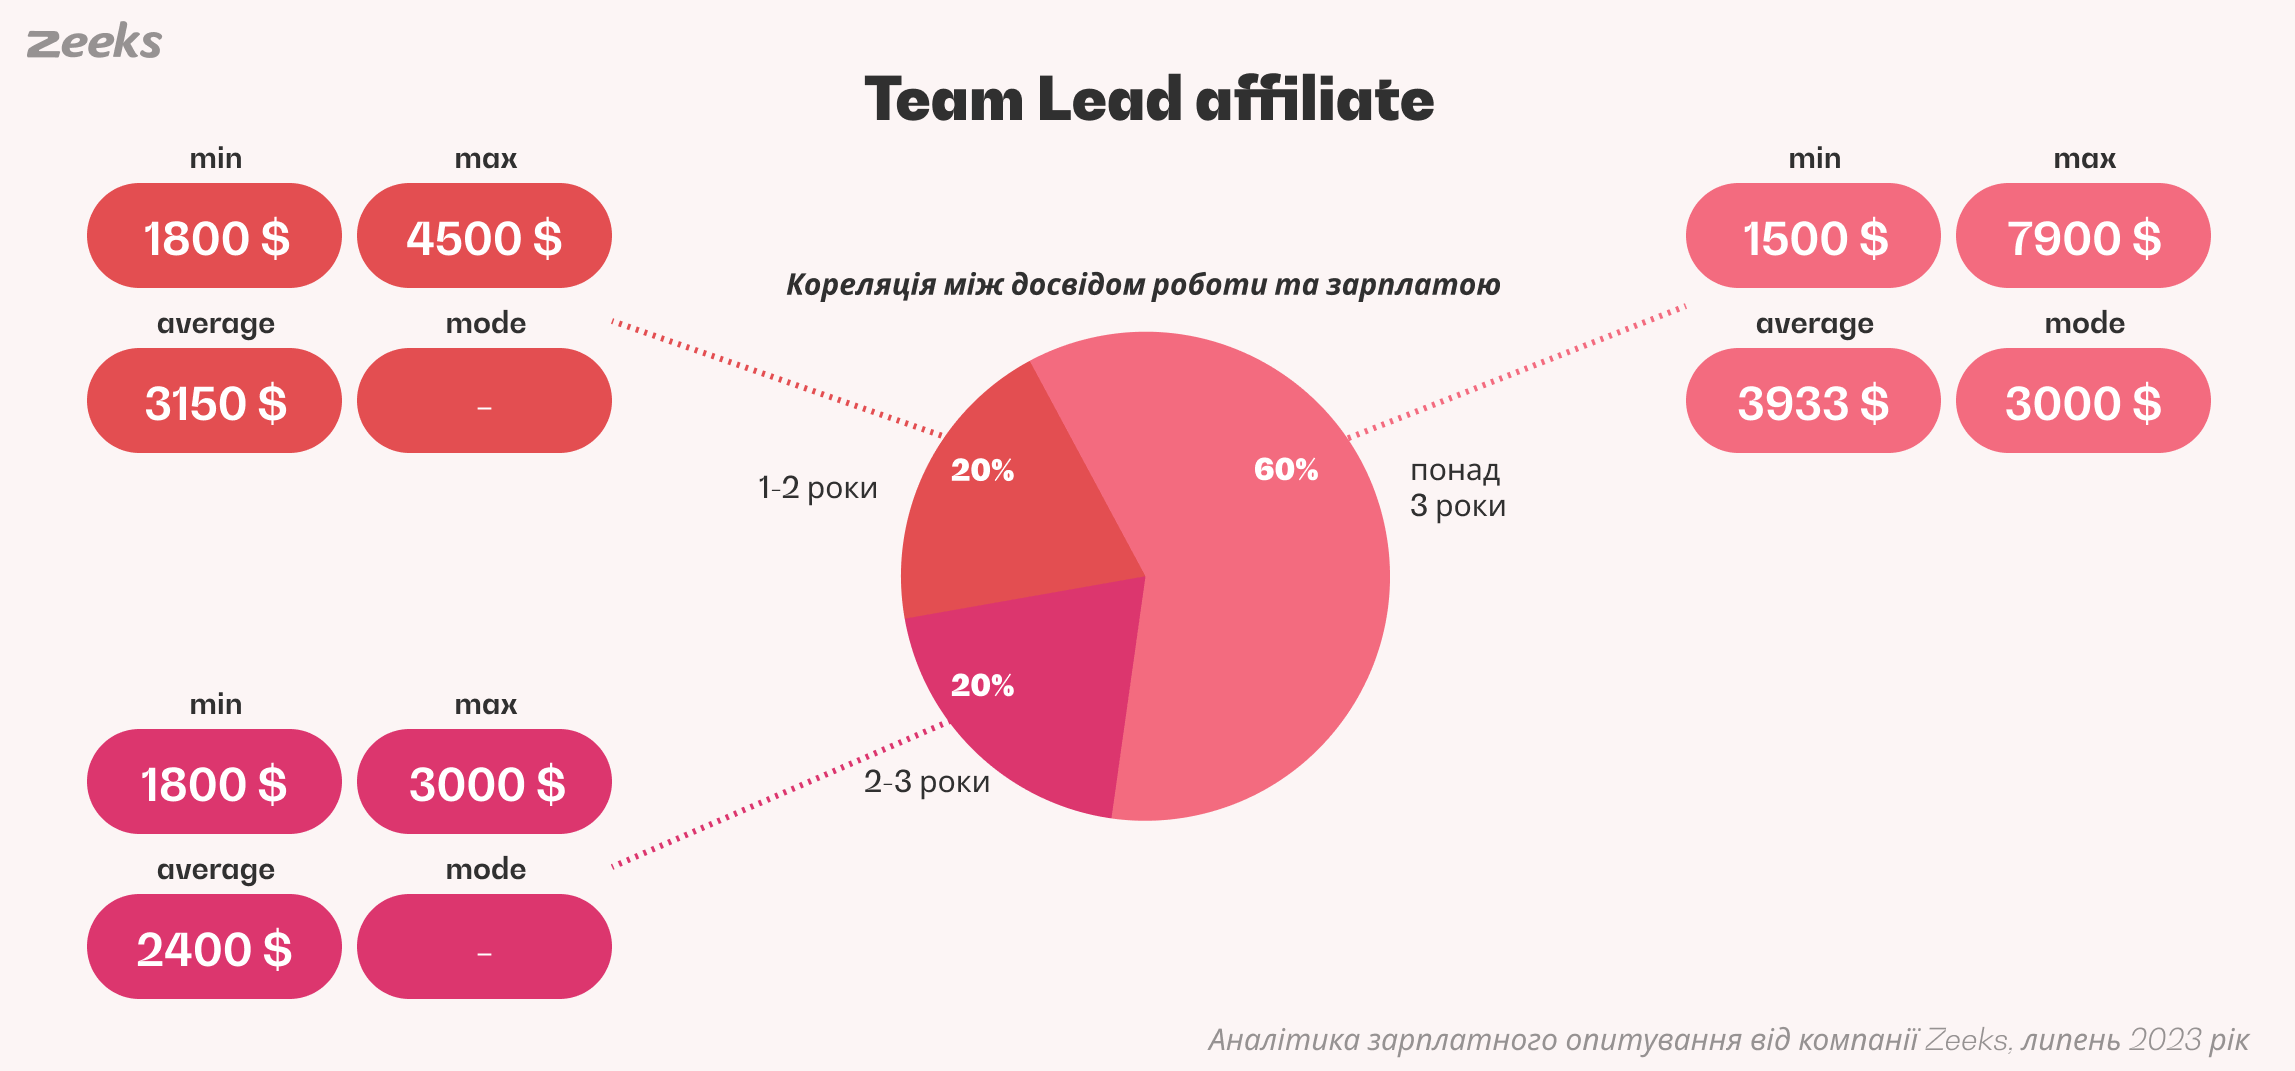 Team Lead affiliate - стаж роботи і вилки заробітної плати, аналітика Zeeks